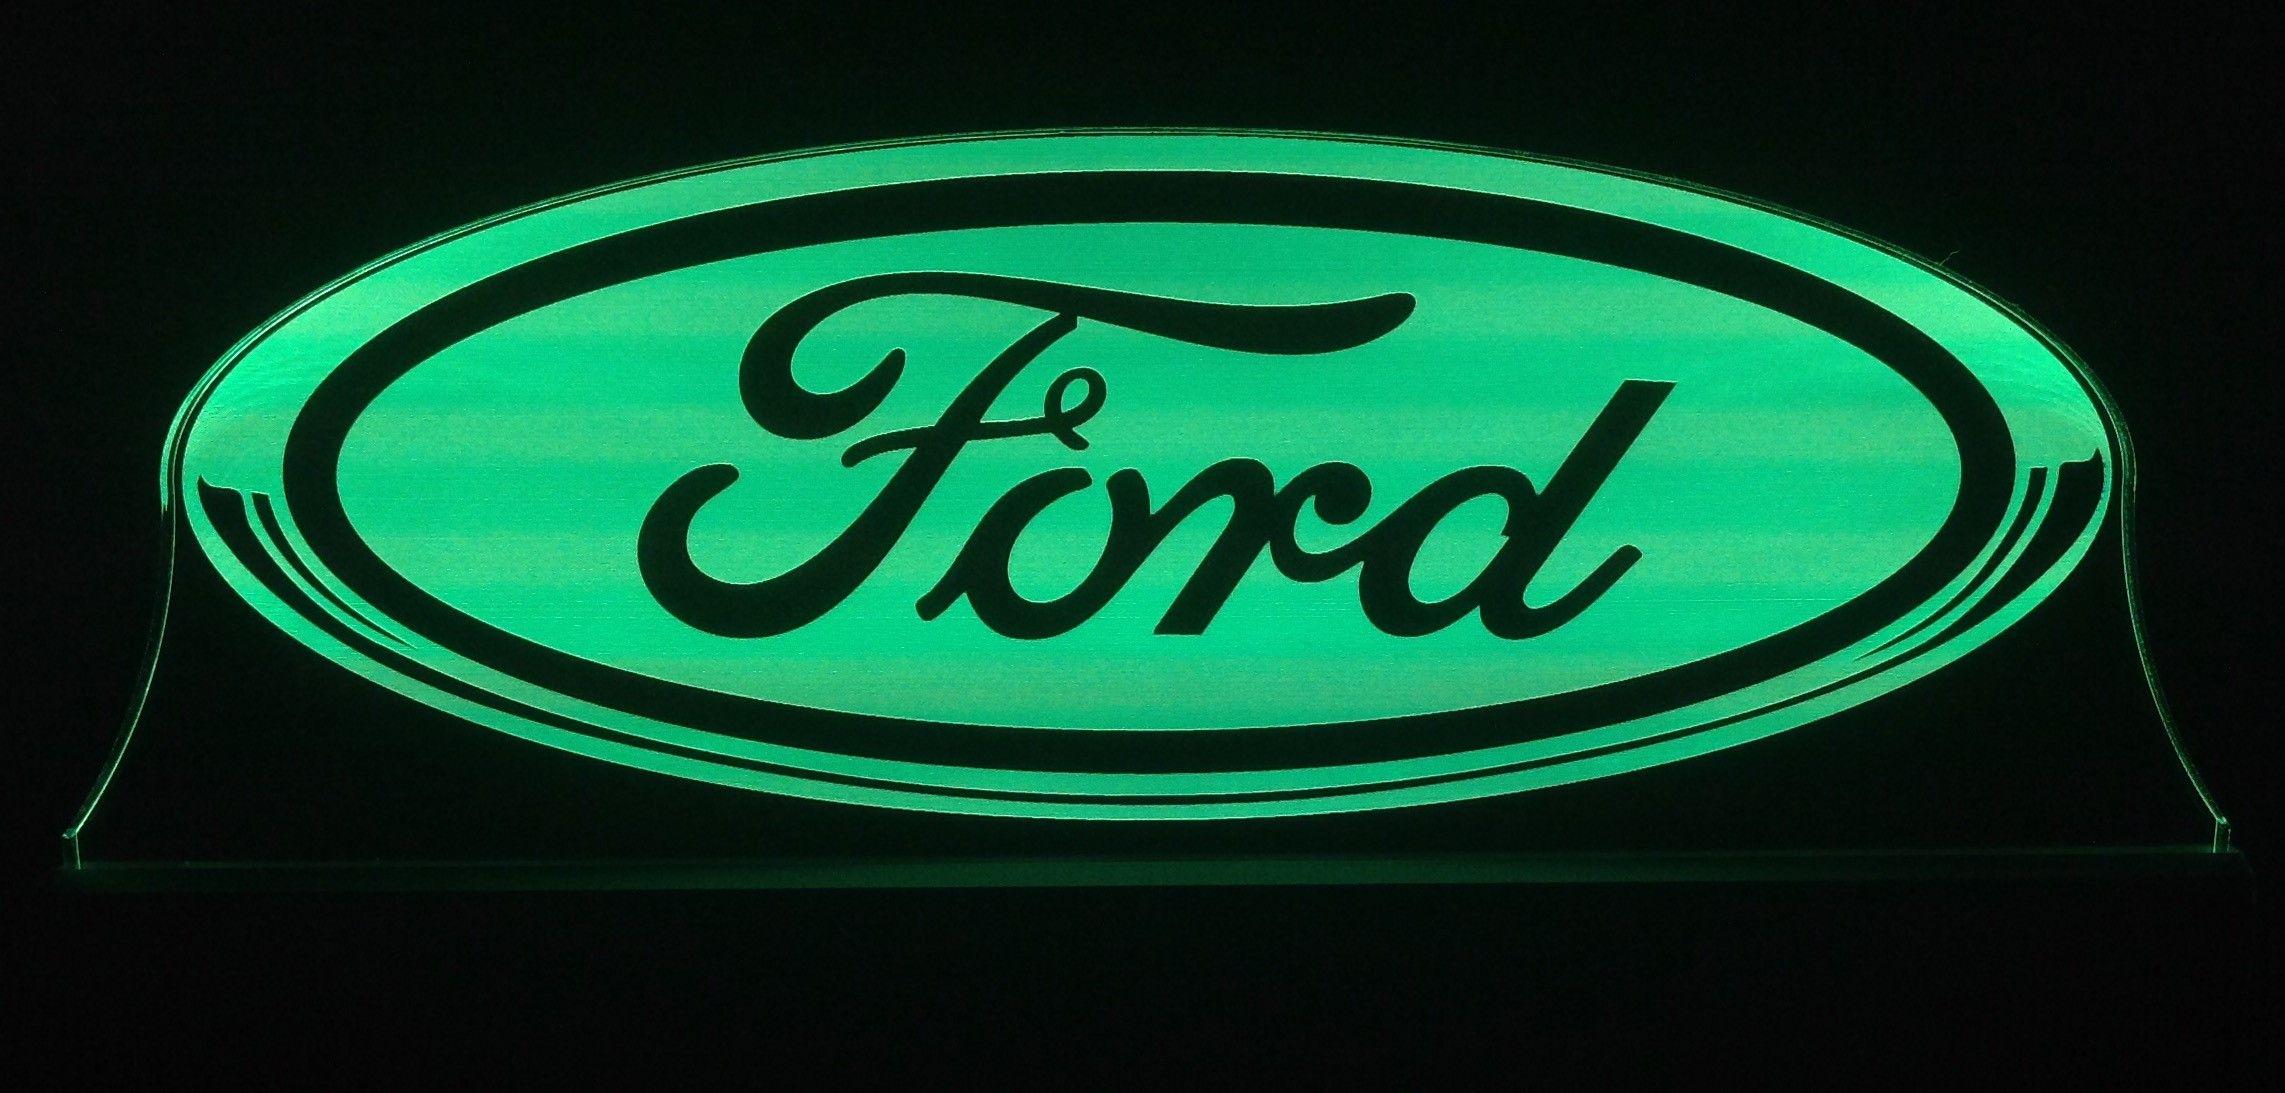 Green Ford Logo - Ford Logo Edgelit Signs. Custom LED SignsJB Edgelit Signs